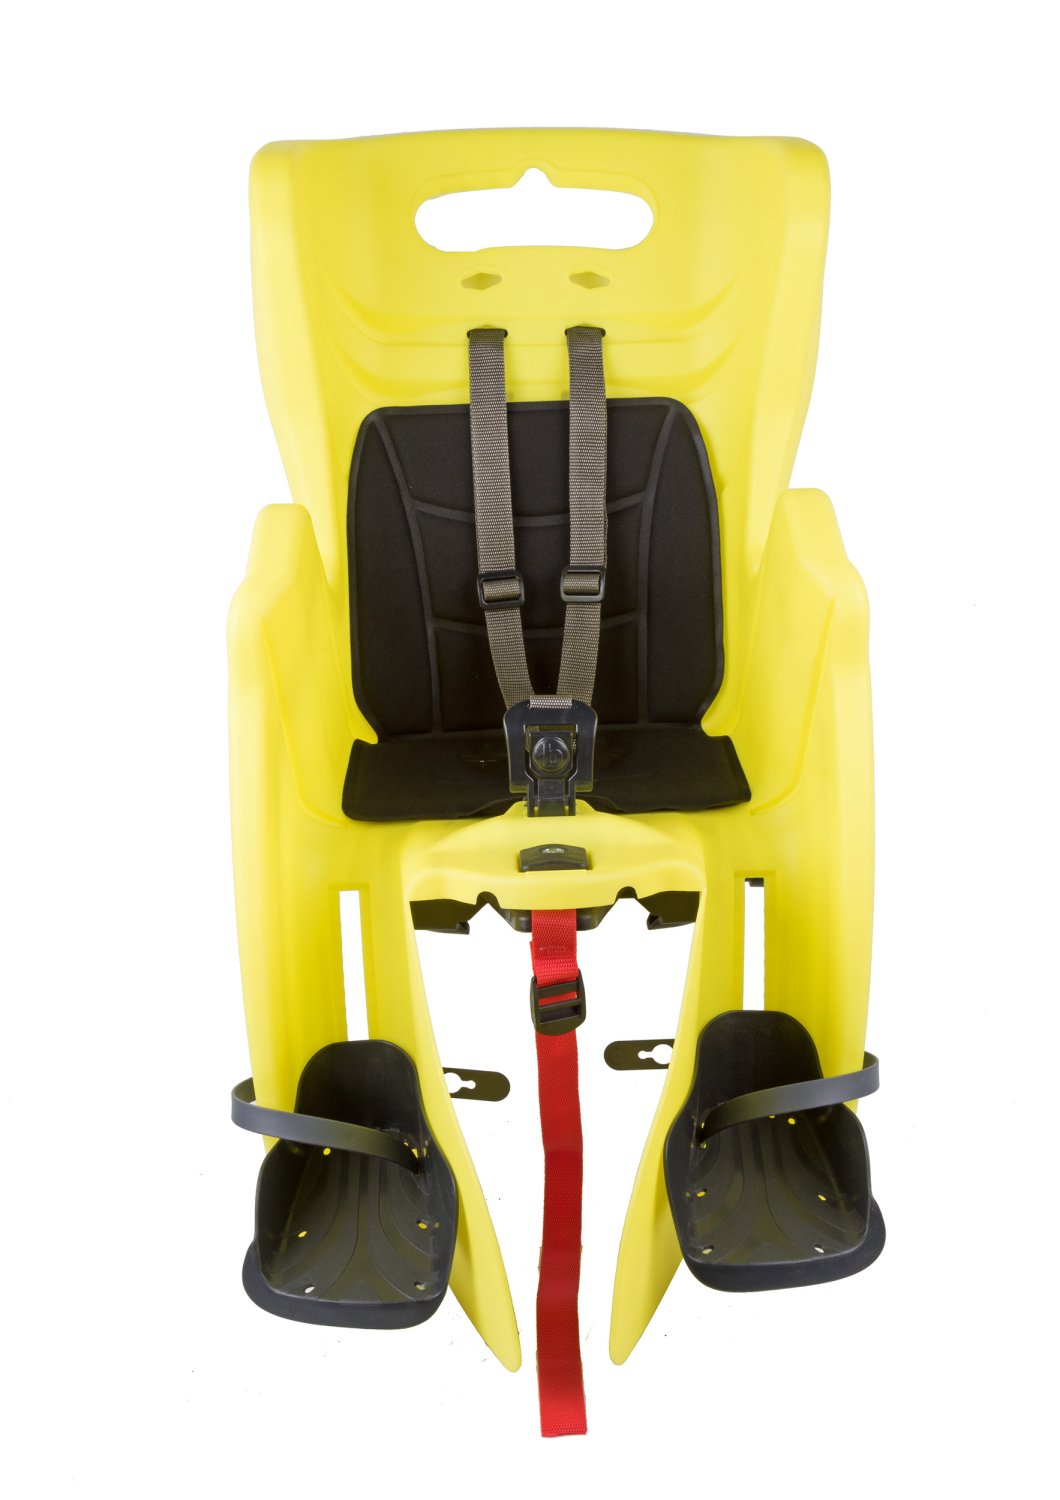 Детское велокресло BELLELLI Little Duck (3) Hi-Viz, на багажник, жёлтое,  до 7лет /22 кг, 0-280235 детское велокресло stark gh 028d на багажник эконом вариант до 15 кг